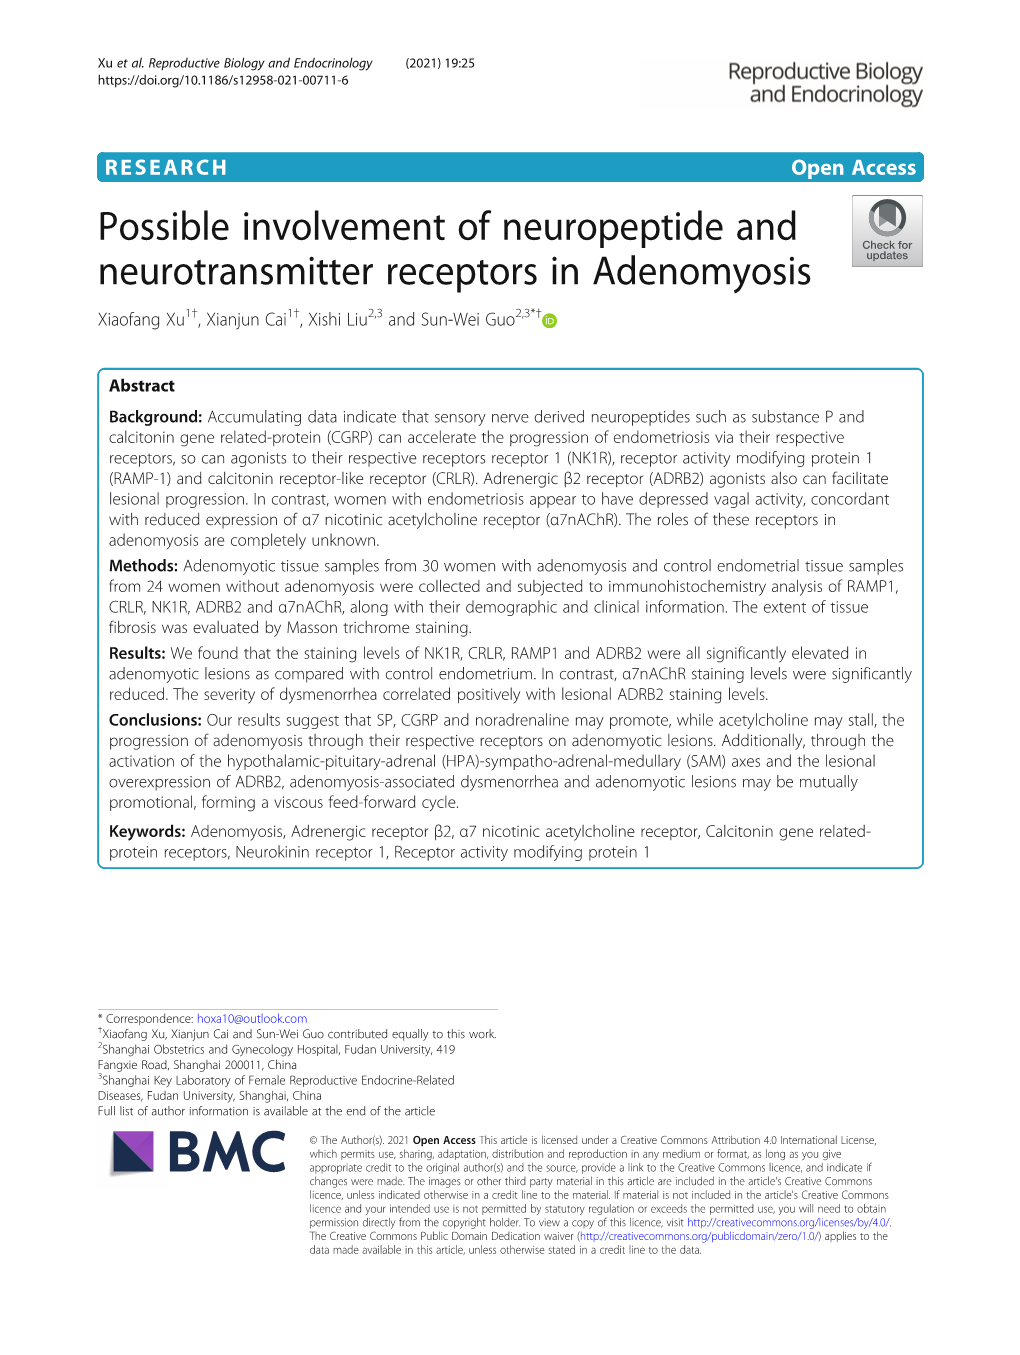 Possible Involvement of Neuropeptide and Neurotransmitter Receptors in Adenomyosis Xiaofang Xu1†, Xianjun Cai1†, Xishi Liu2,3 and Sun-Wei Guo2,3*†